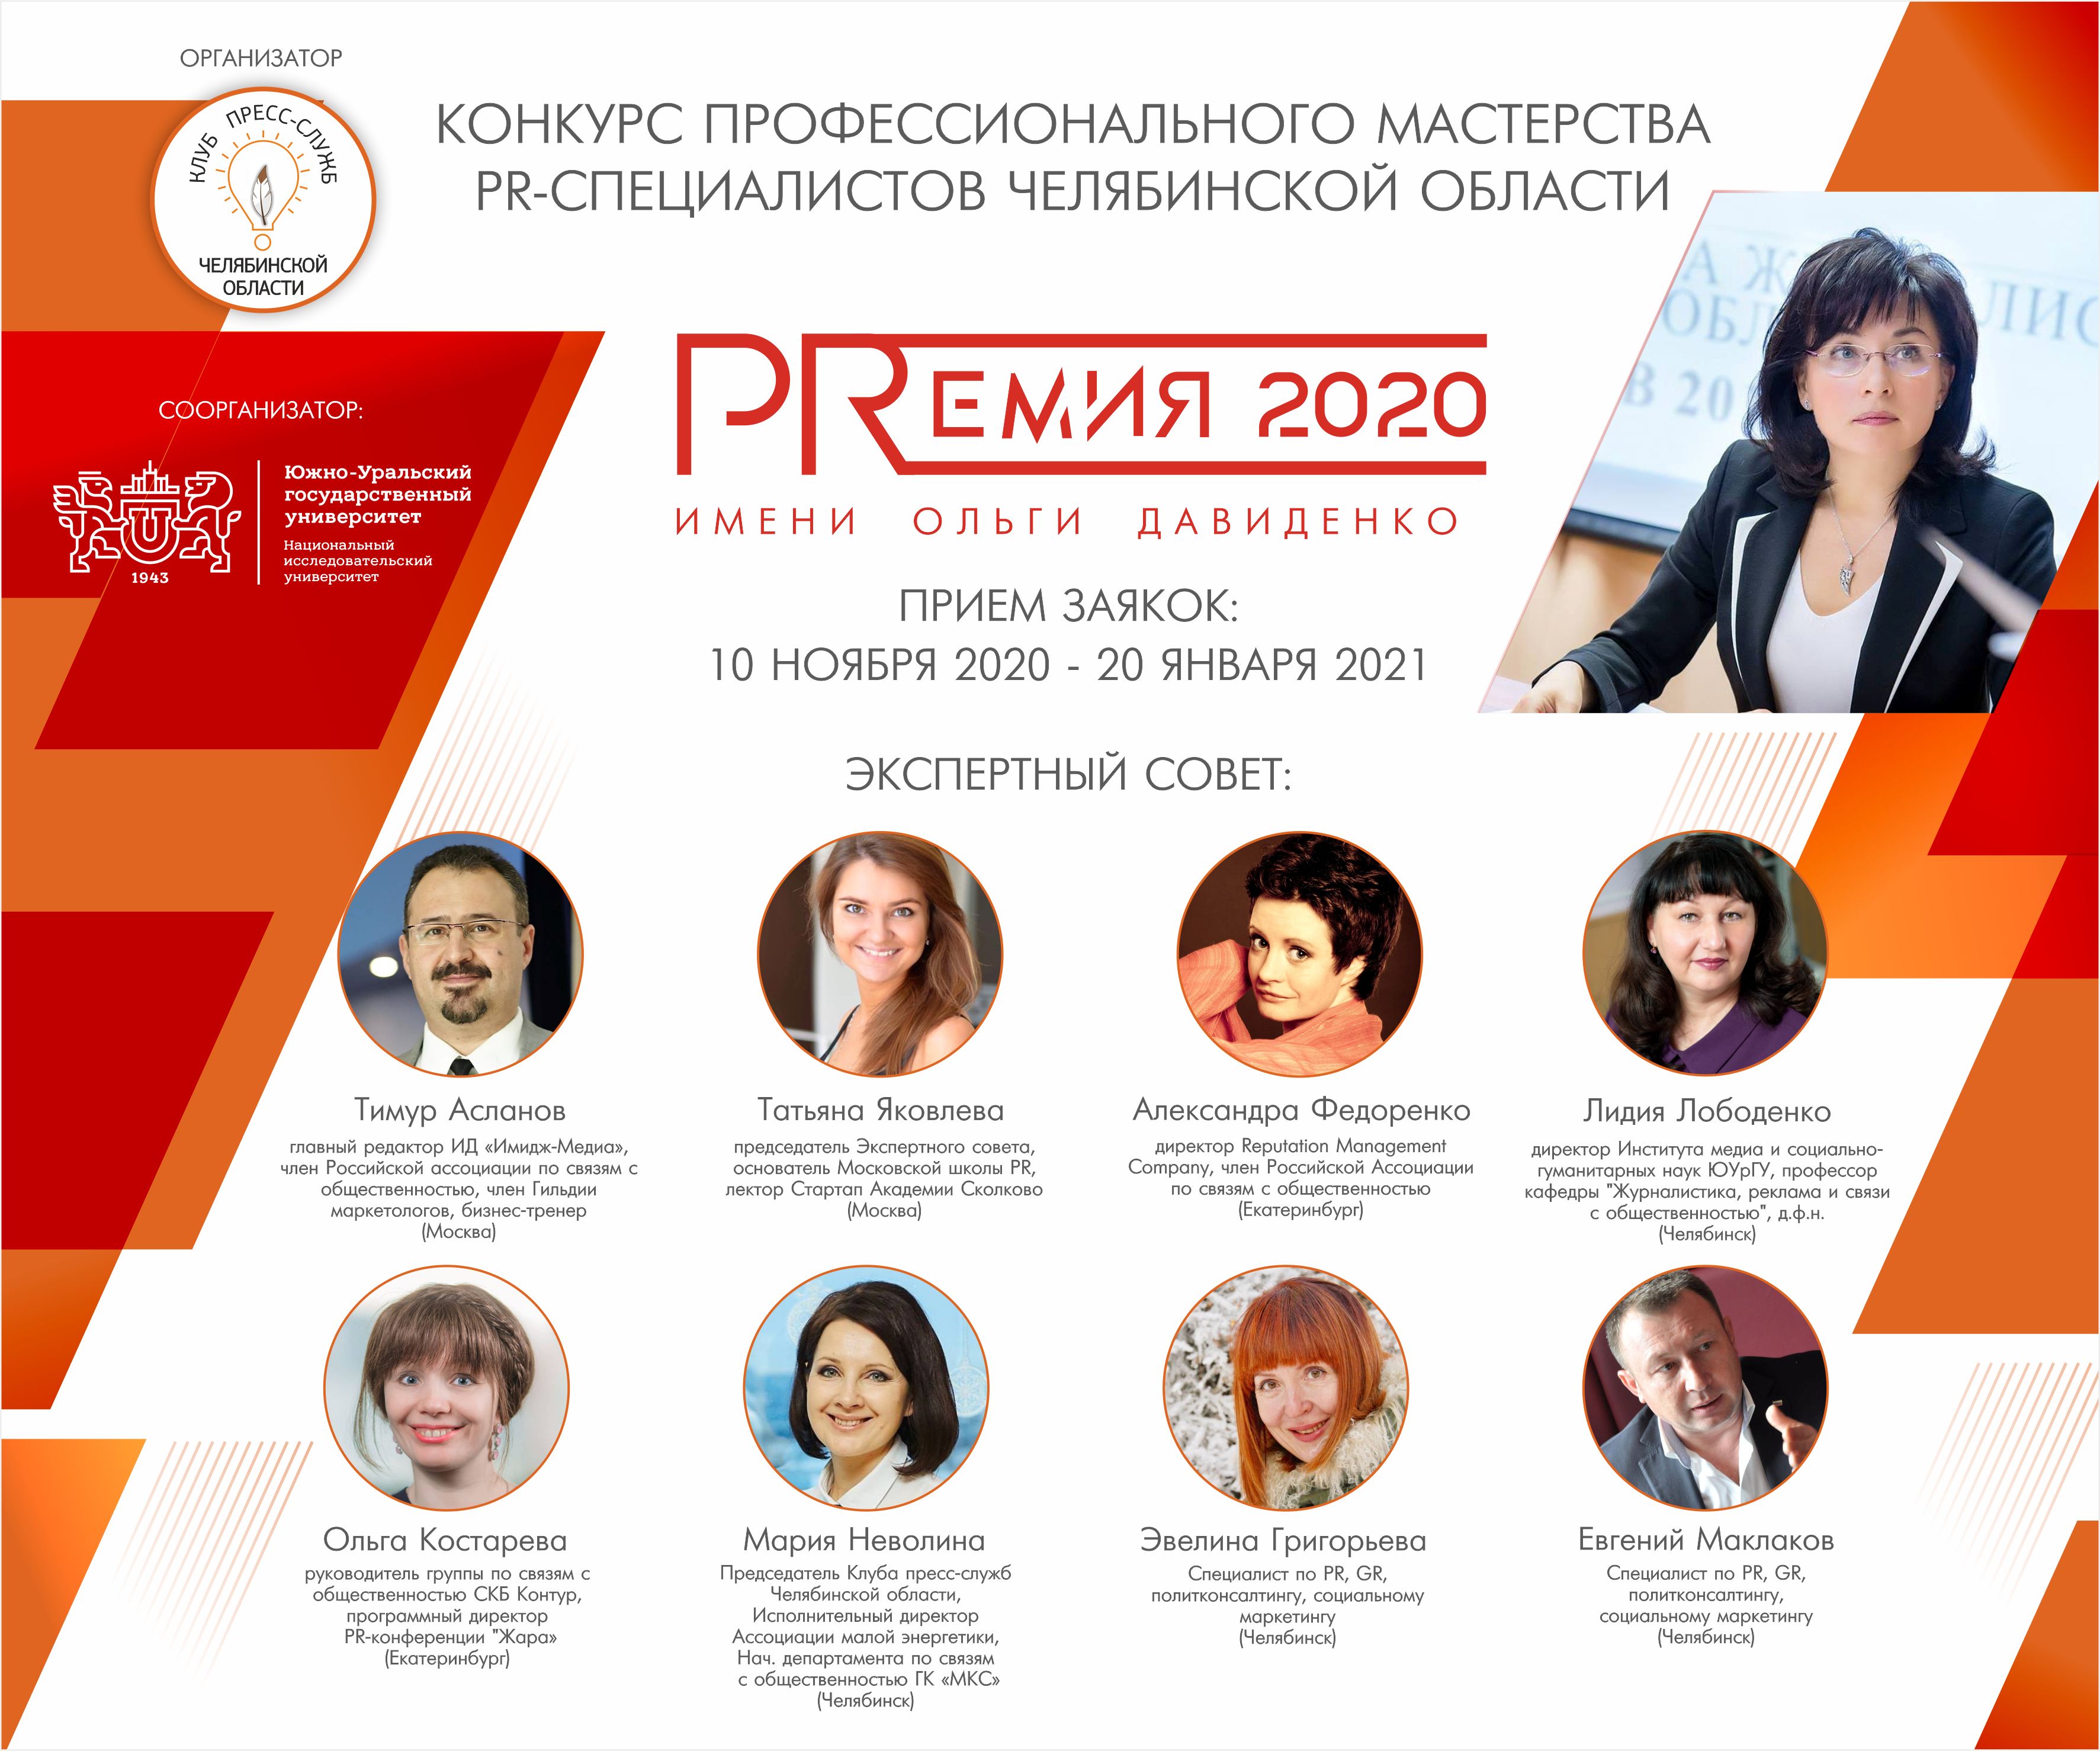 В Челябинске объявлен конкурс PR-специалистов «PRЕМИЯ-2020» имени Ольги Давиденко